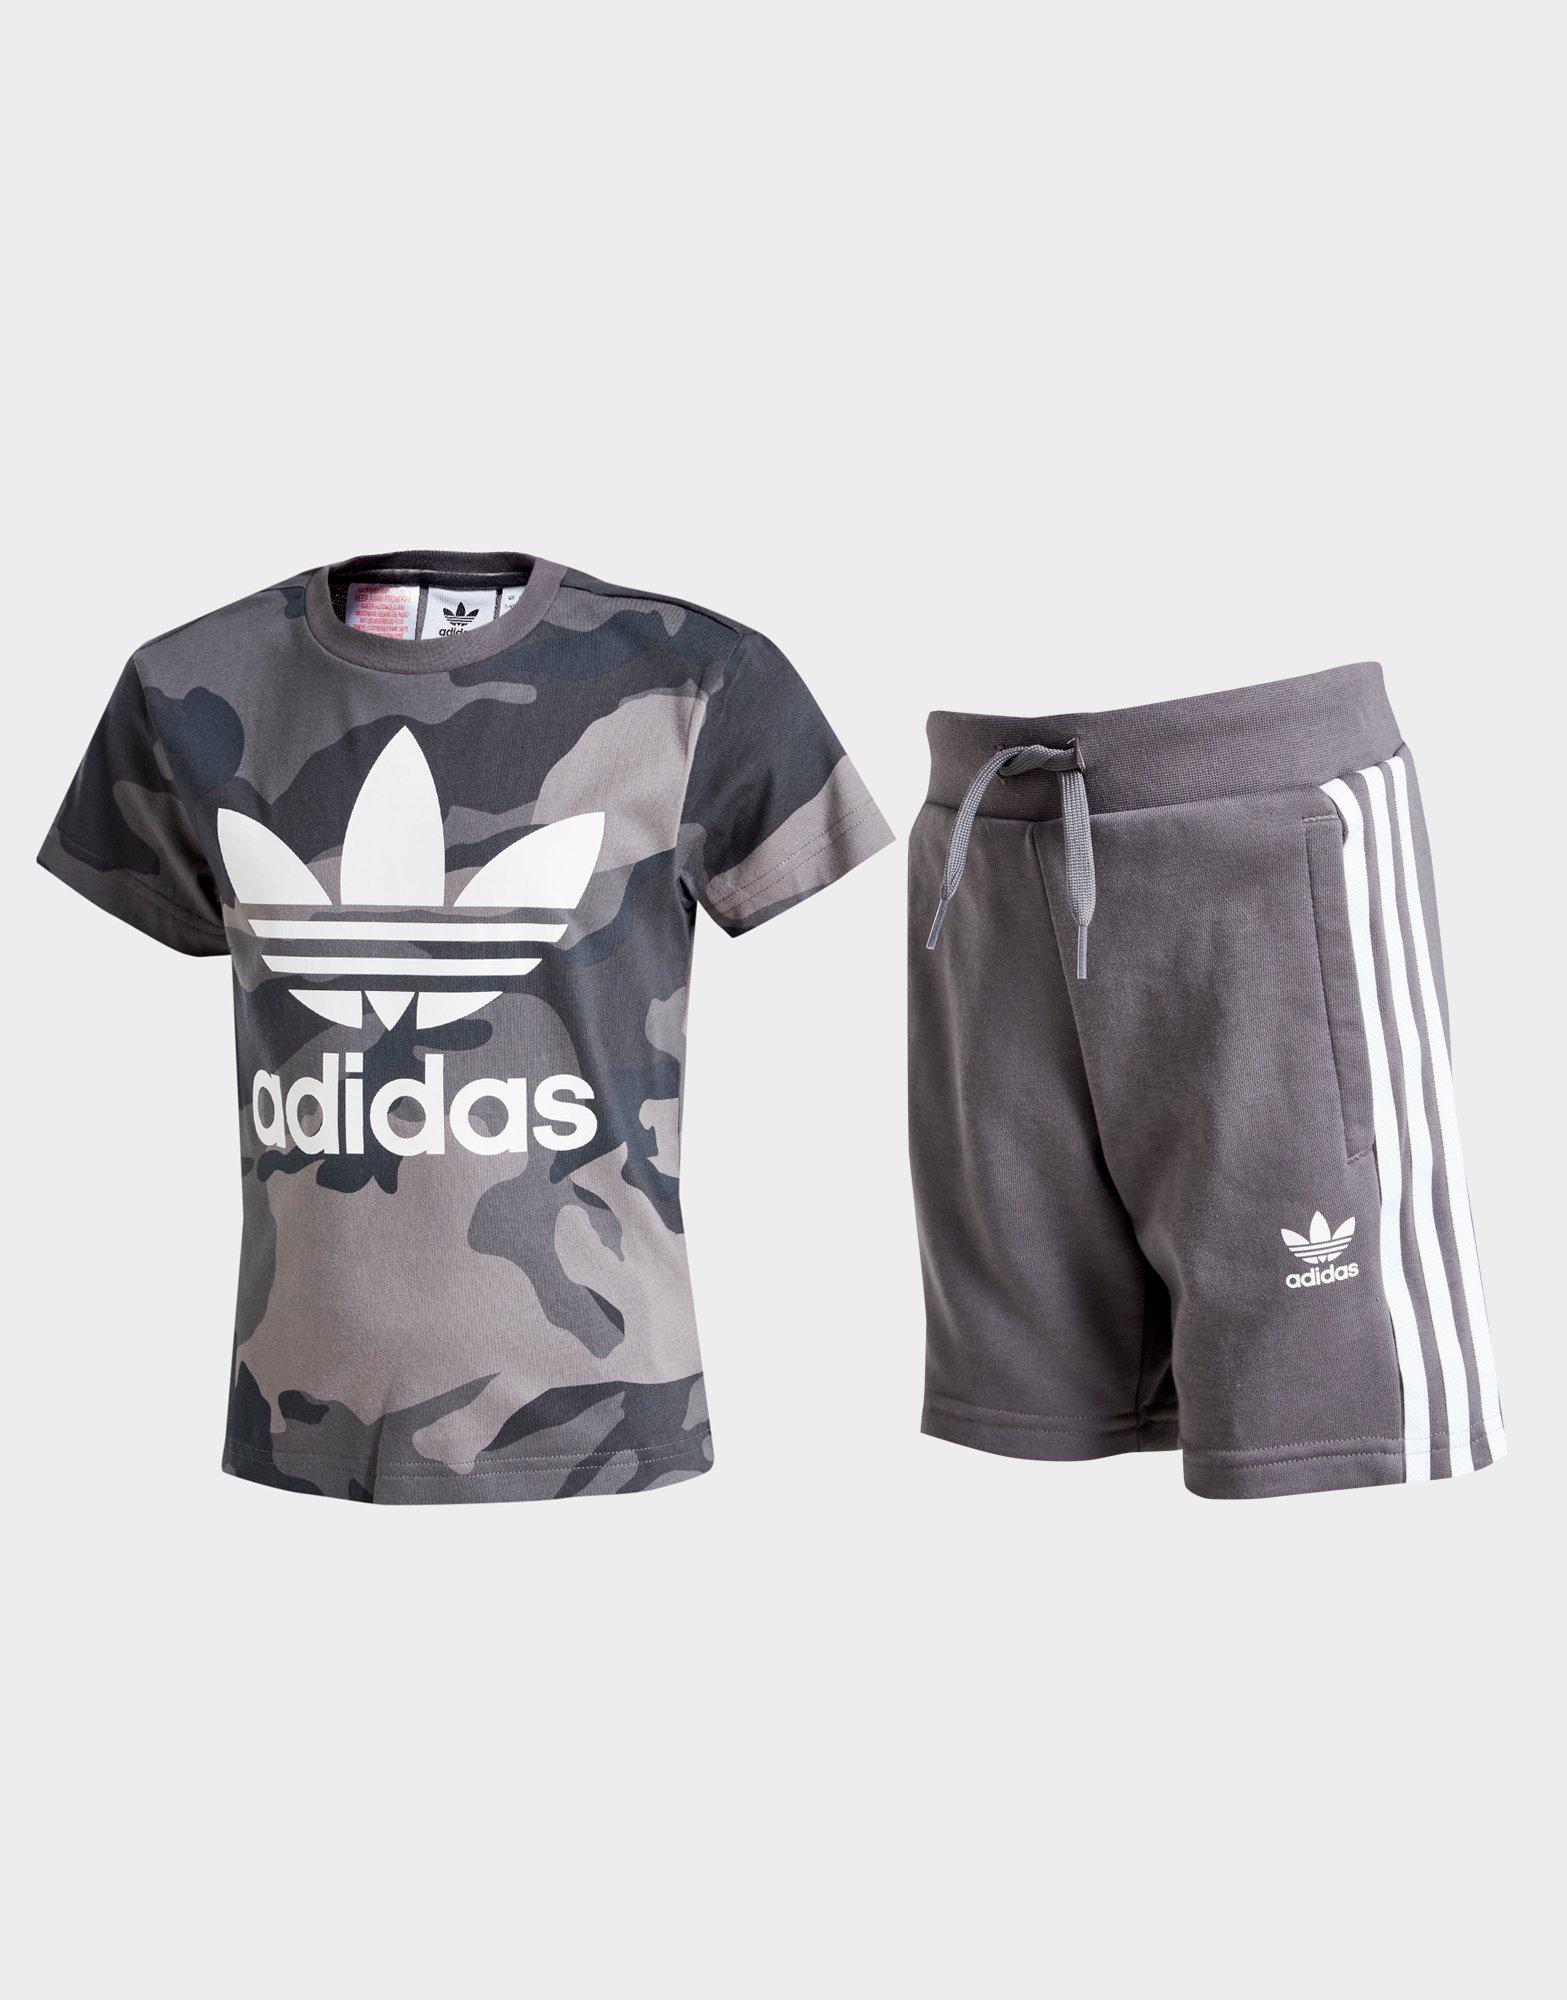 adidas t shirt and shorts set